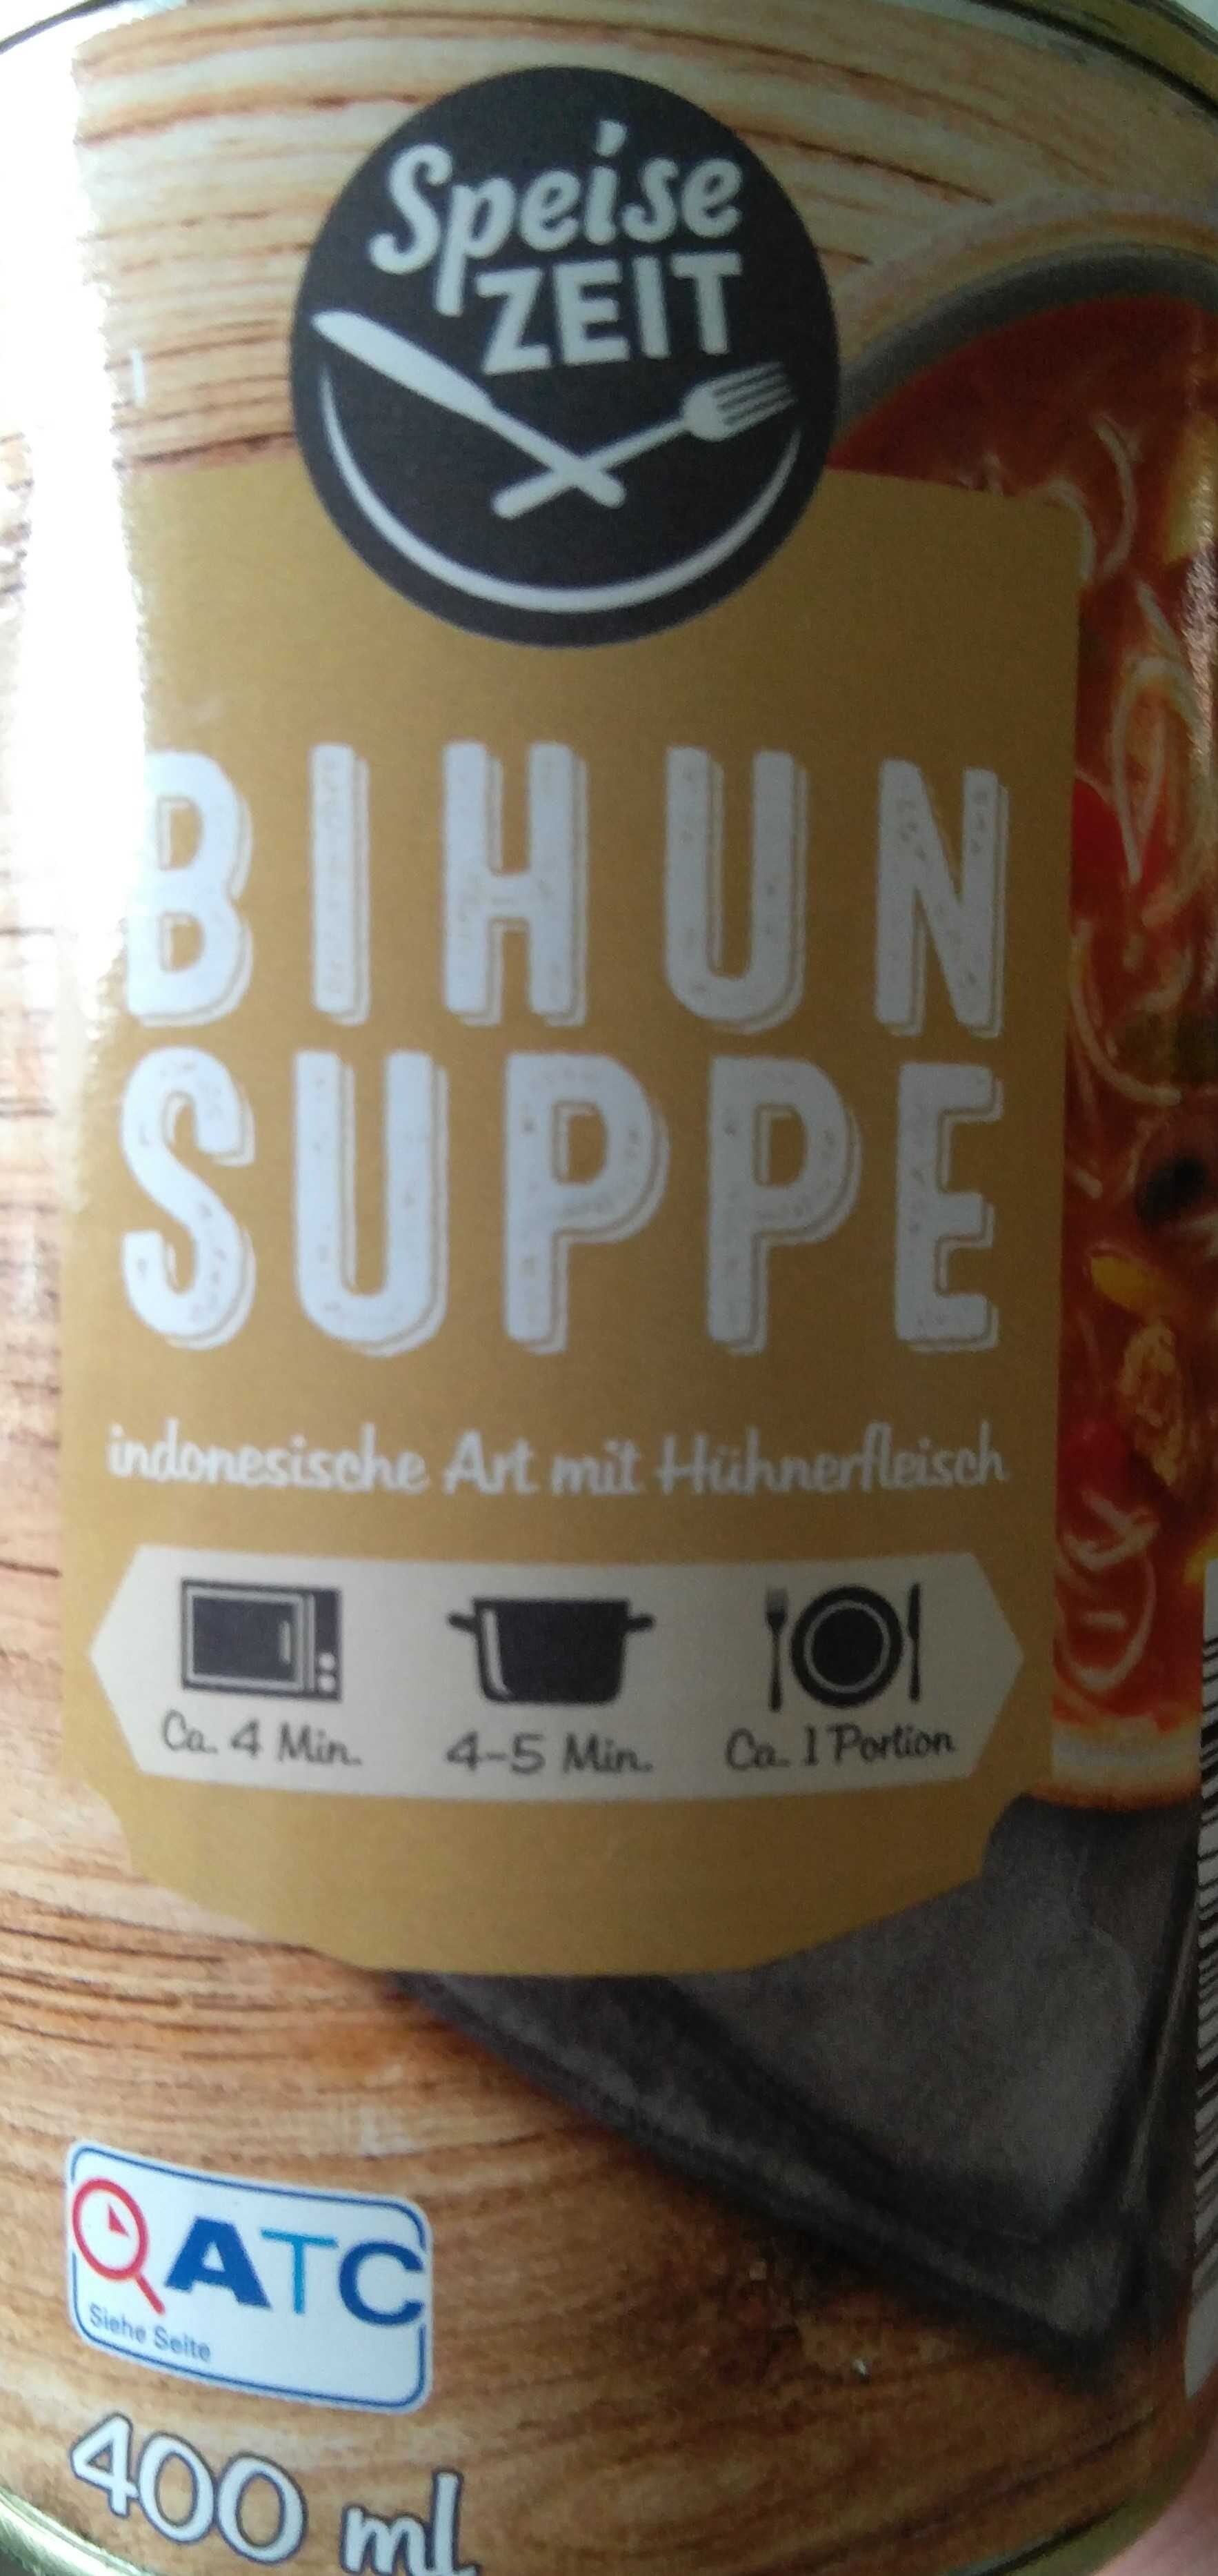 Bihun Suppe - Produkt - en